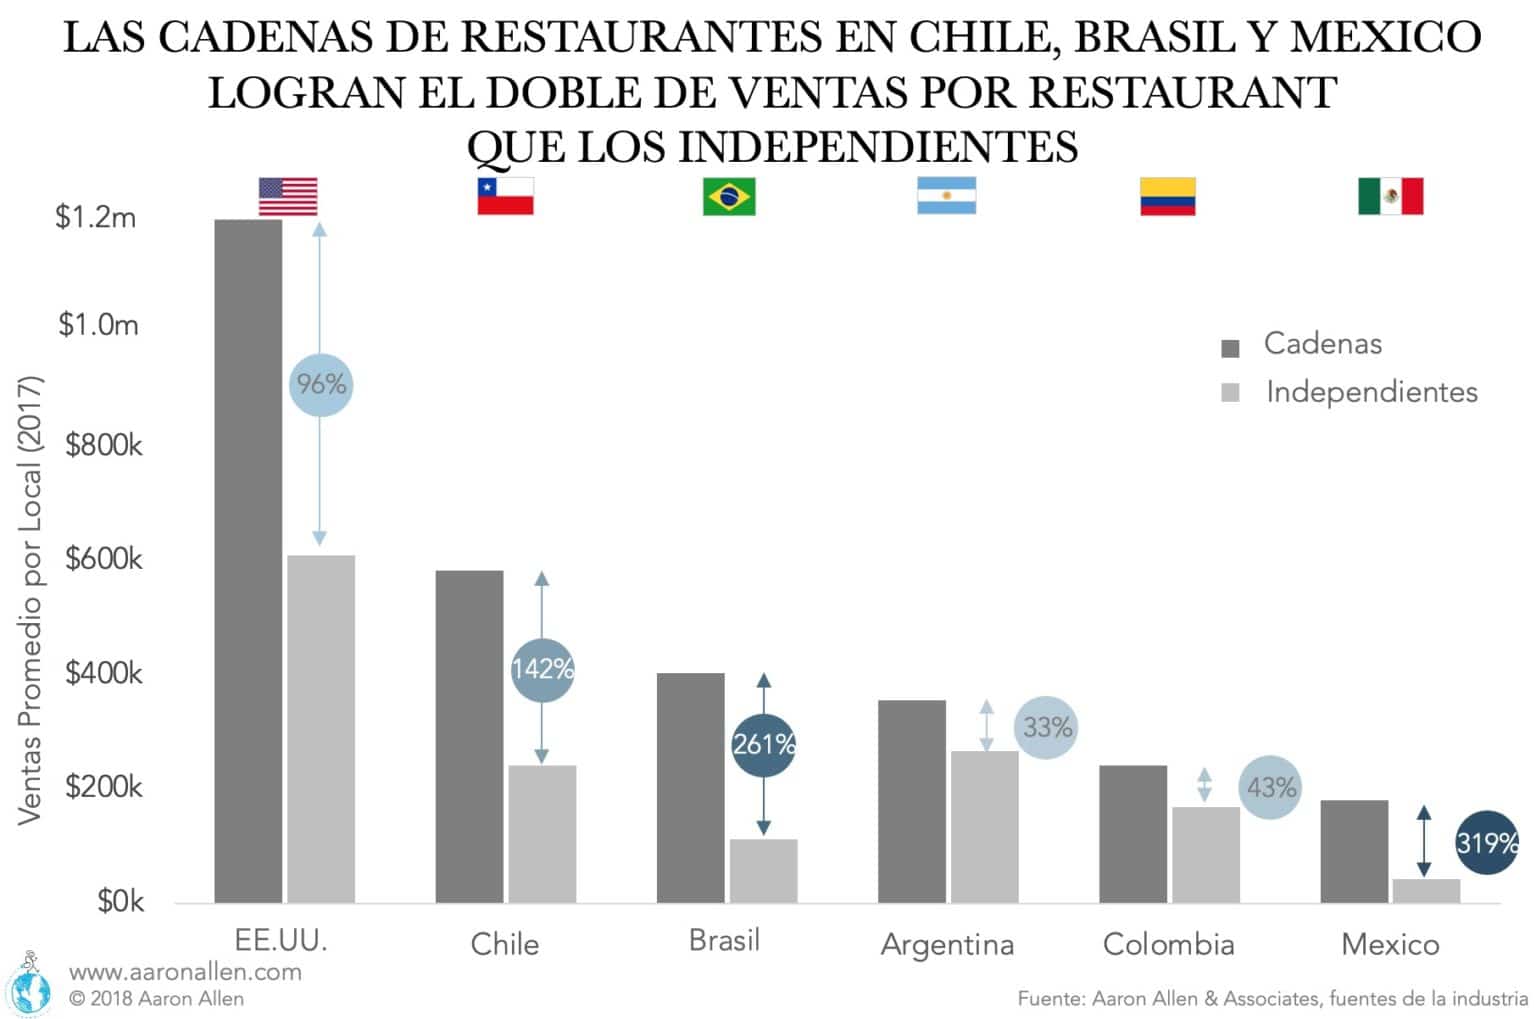 A nivel mundial, las cadenas de restaurantes tienden a lograr volúmenes más altos de ventas por restaurant que las operaciones independientes (aquellos restaurantes que no son parte de una cadena). En los EE.UU., La proporción es casi de dos a uno, pero en muchos países de América Latina, la diferencia es aún más sorprendente. Por ejemplo, en Chile, Brasil y México, las cadenas venden 142%, 261% y 319% más que los independientes, respectivamente.